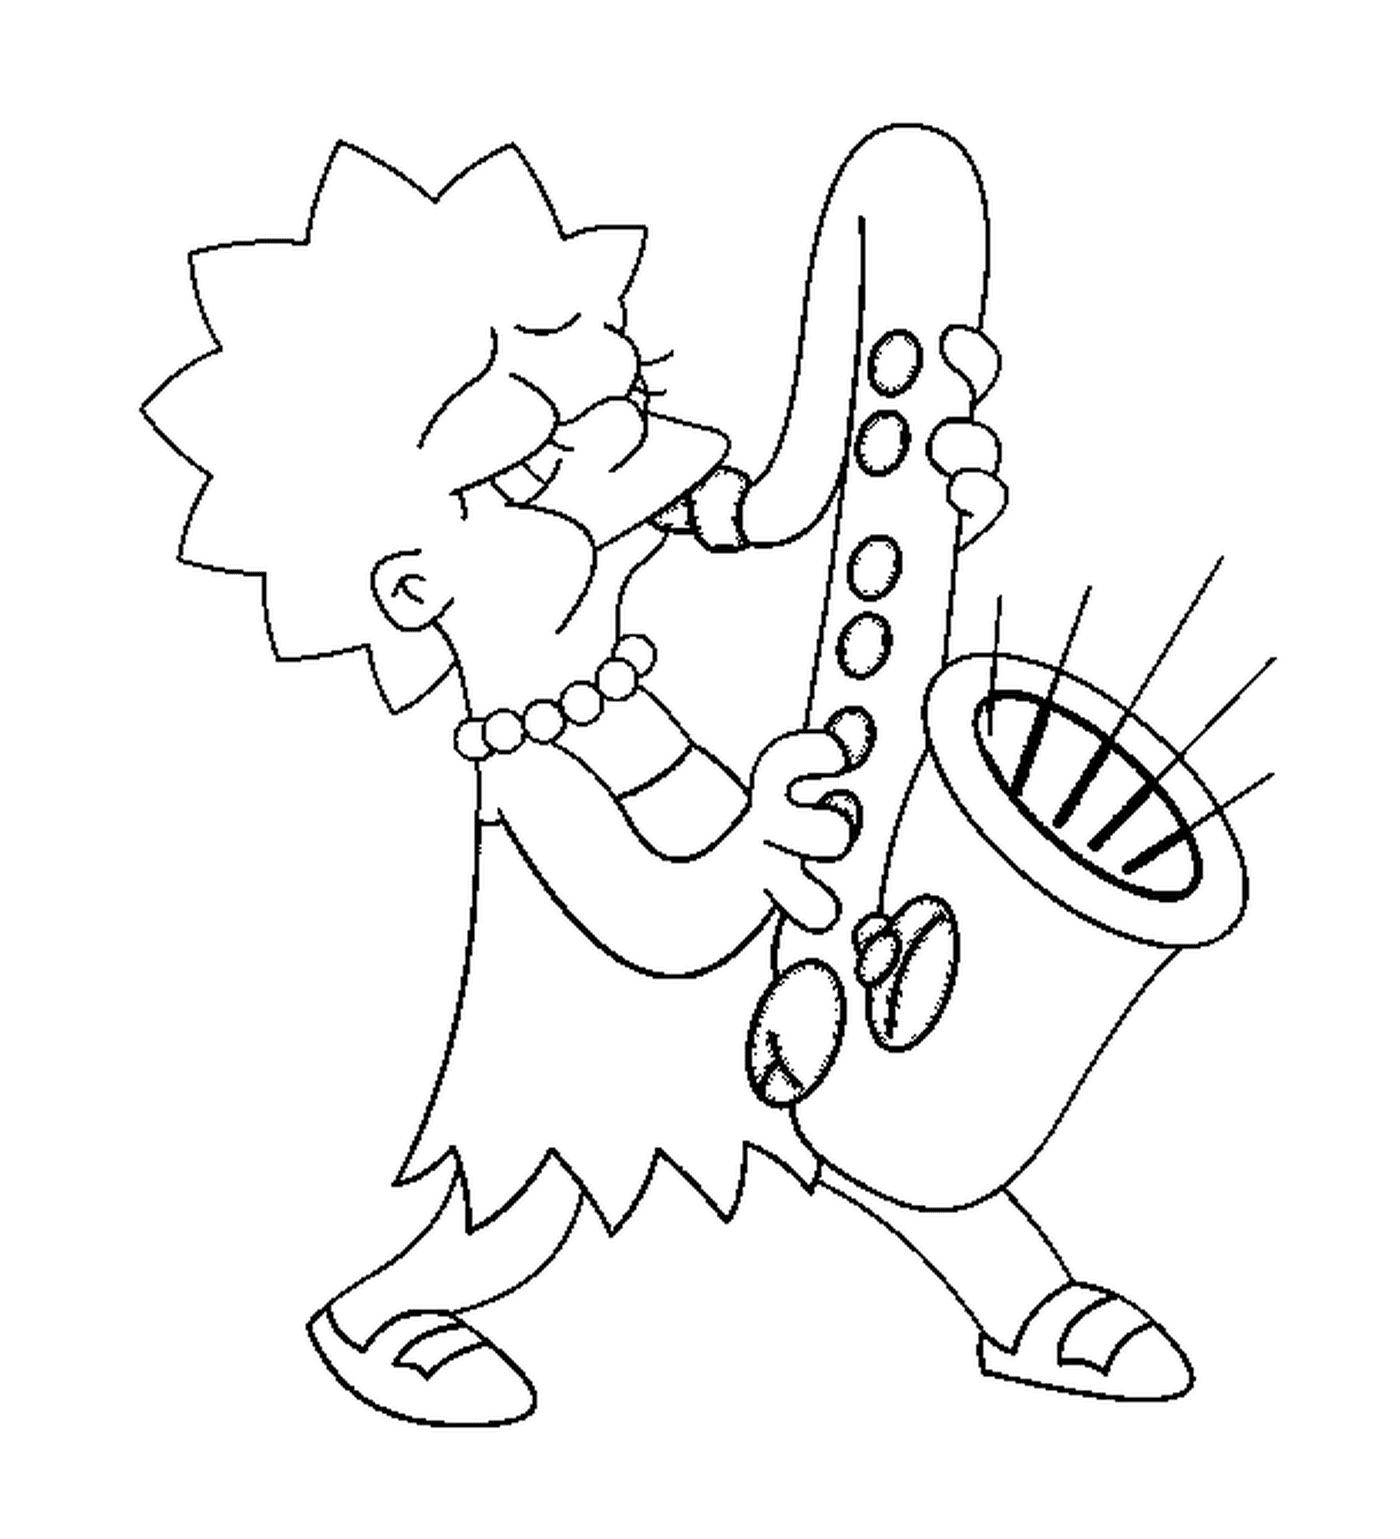  Lisa spielt das harmonische Saxophon 